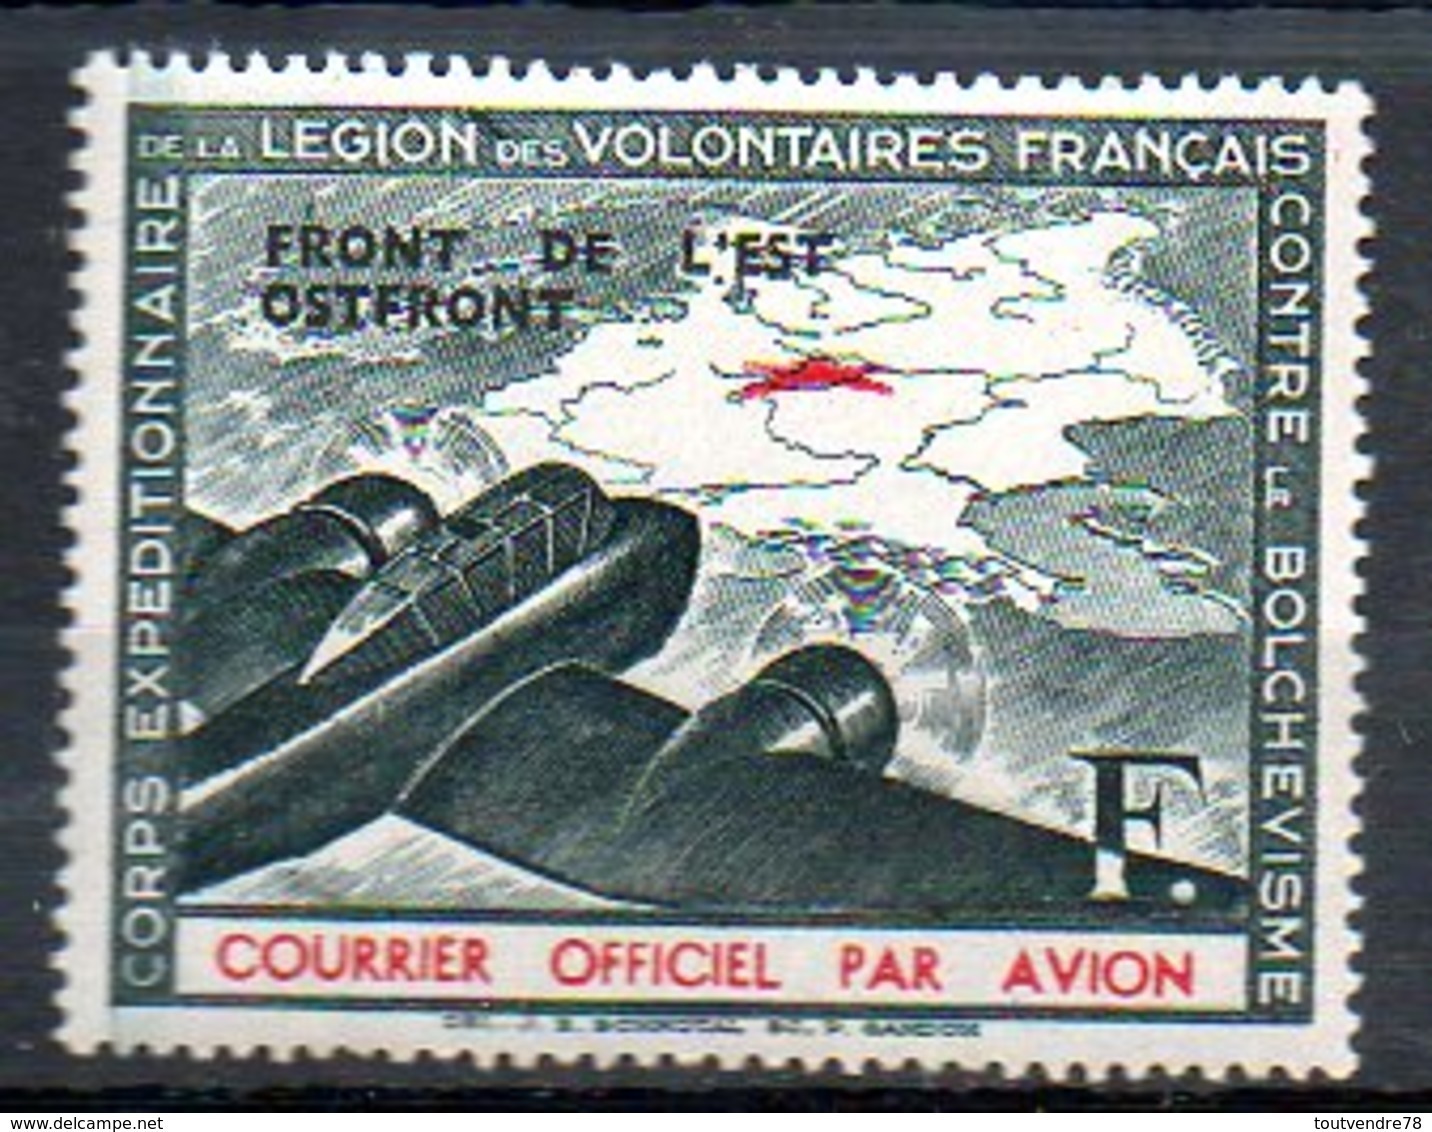 LVF05 : France LVF Neuf Yvert N°4 - War Stamps